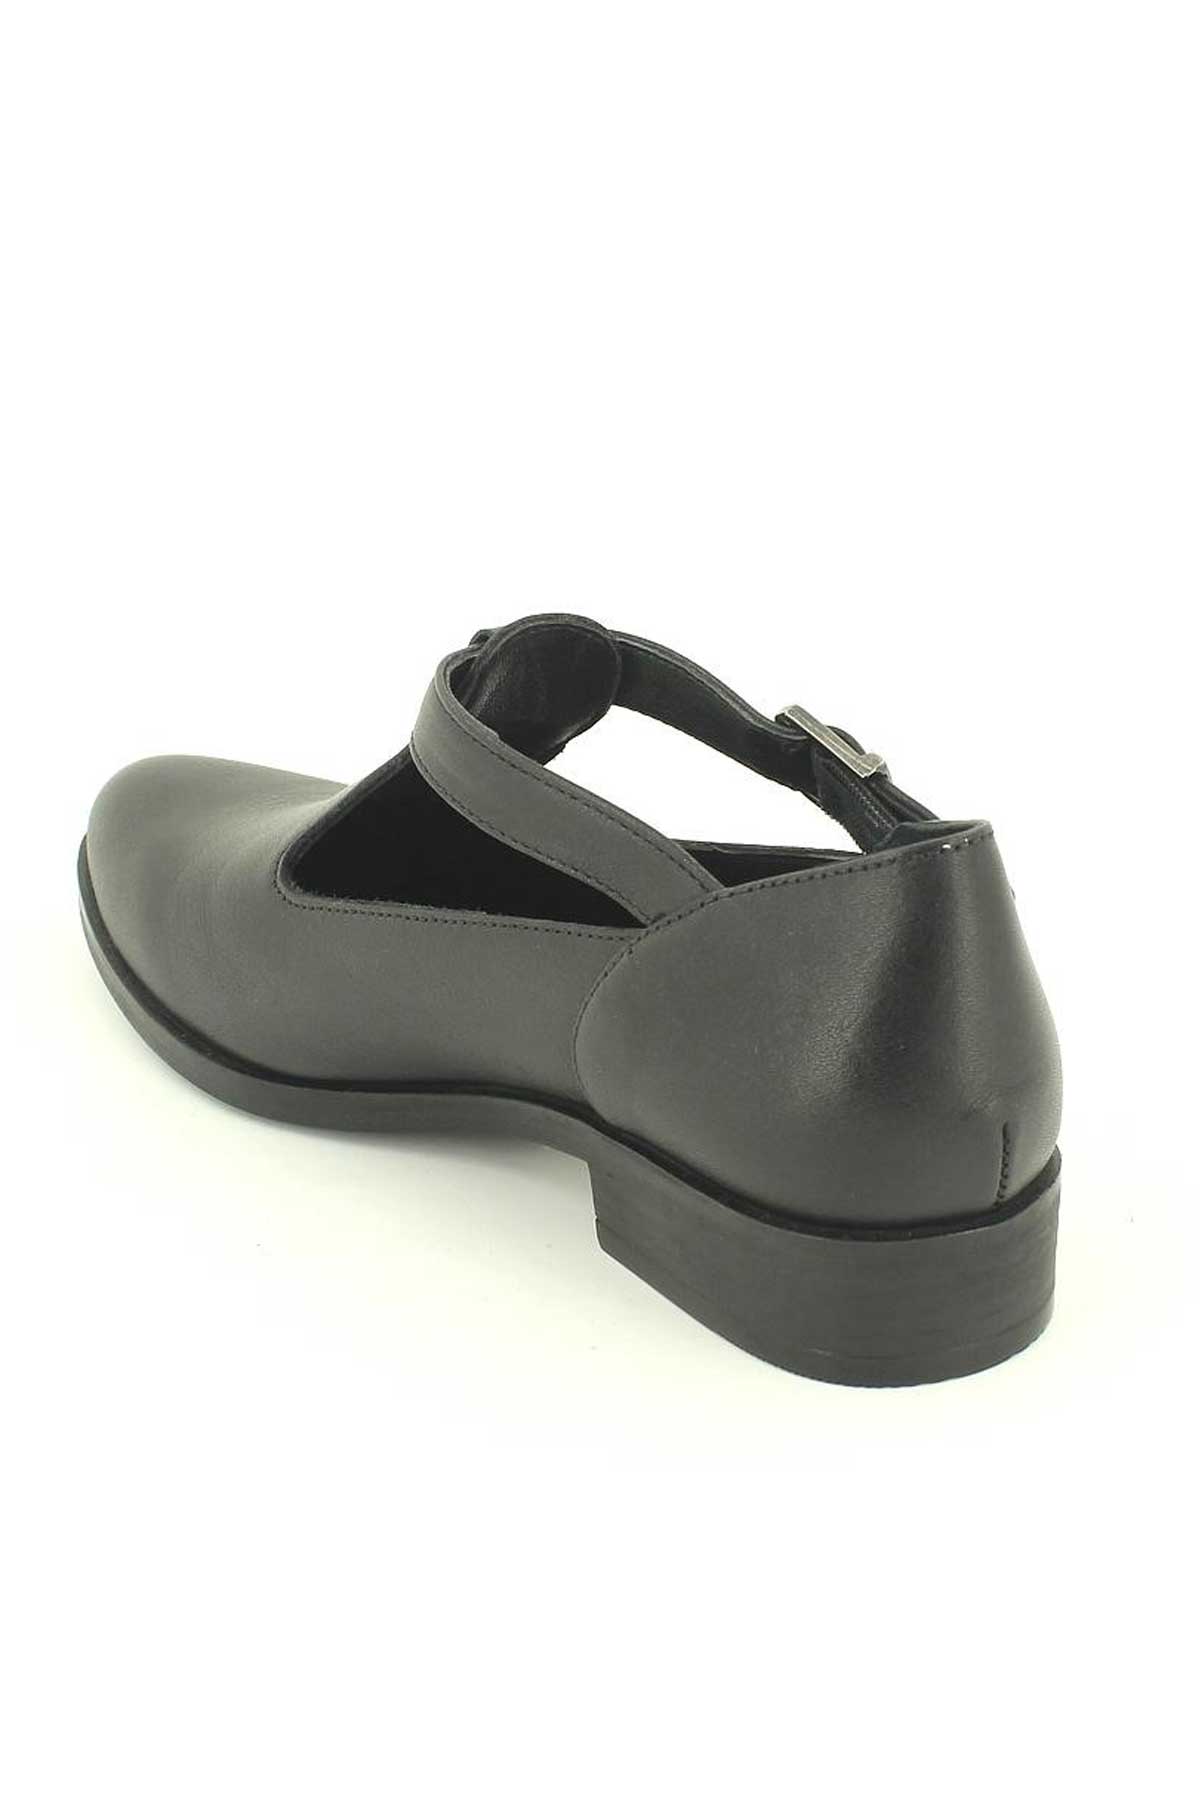 Kadın Deri Ayakkabı Siyah 145405K - Thumbnail